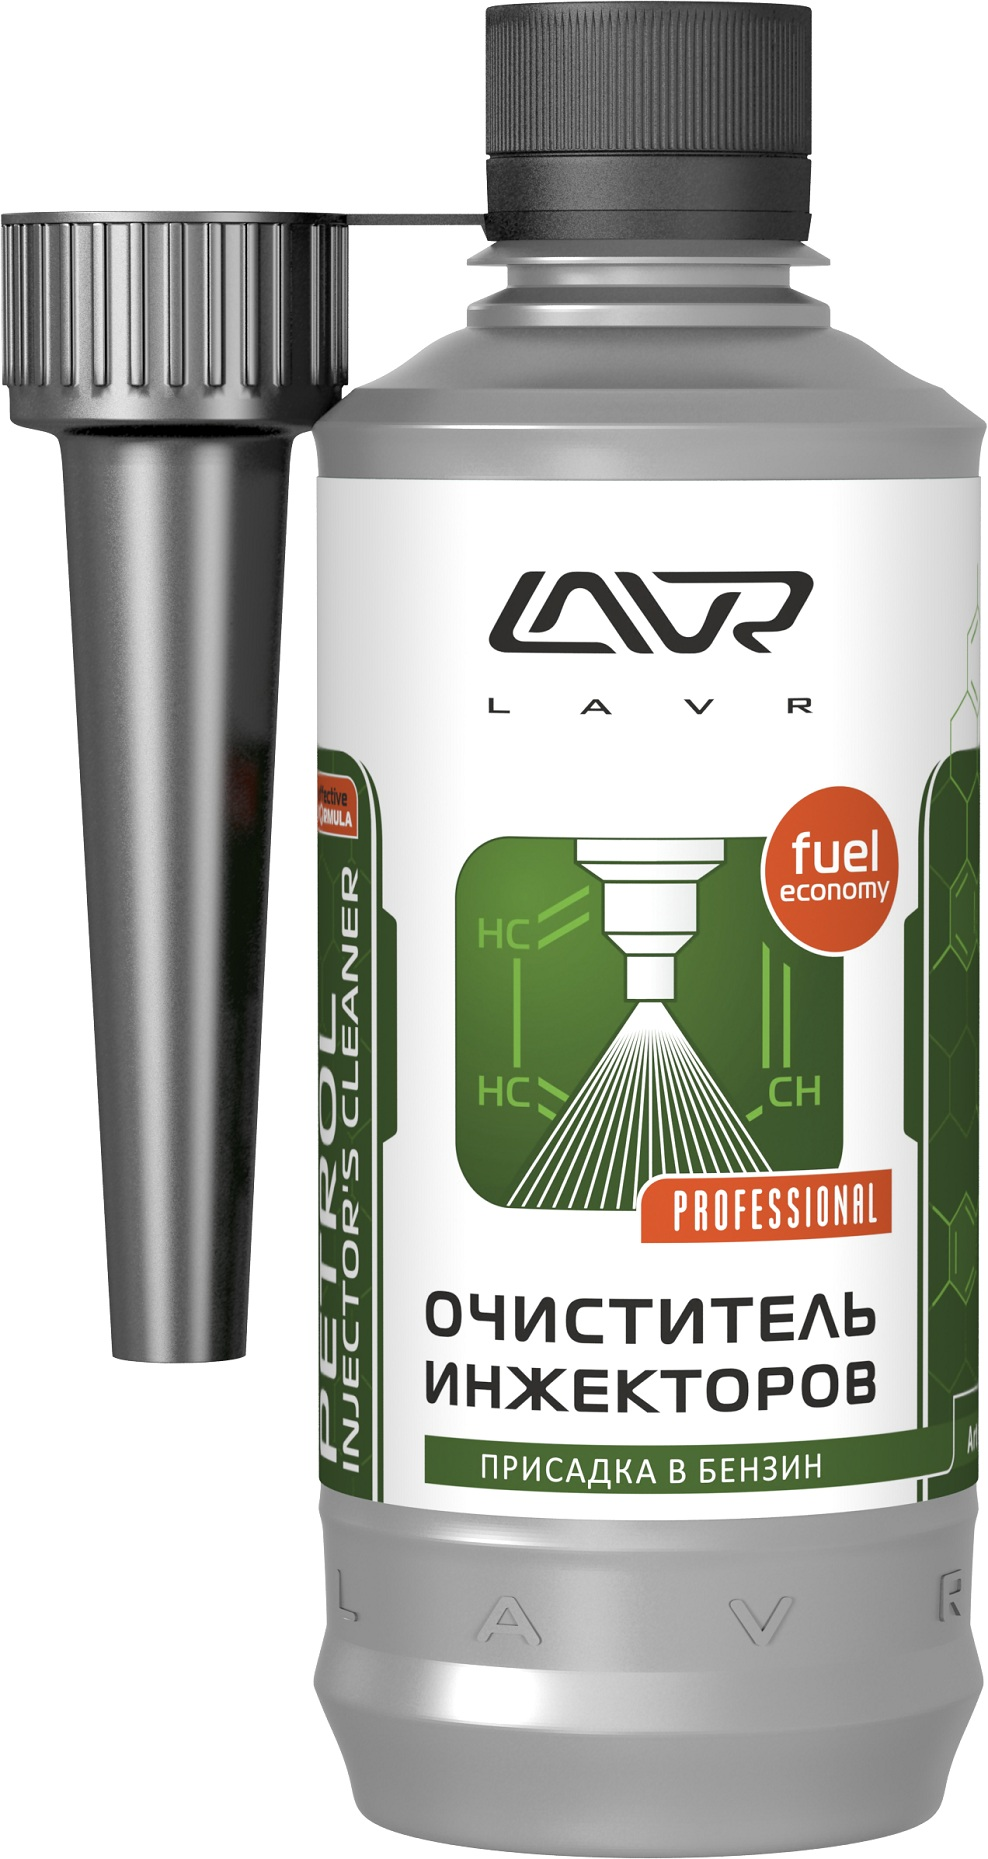 Купить запчасть LAVR - Ln2109 Очиститель инжекторов LAVR Injector Cleaner Petrol, присадка в бензин